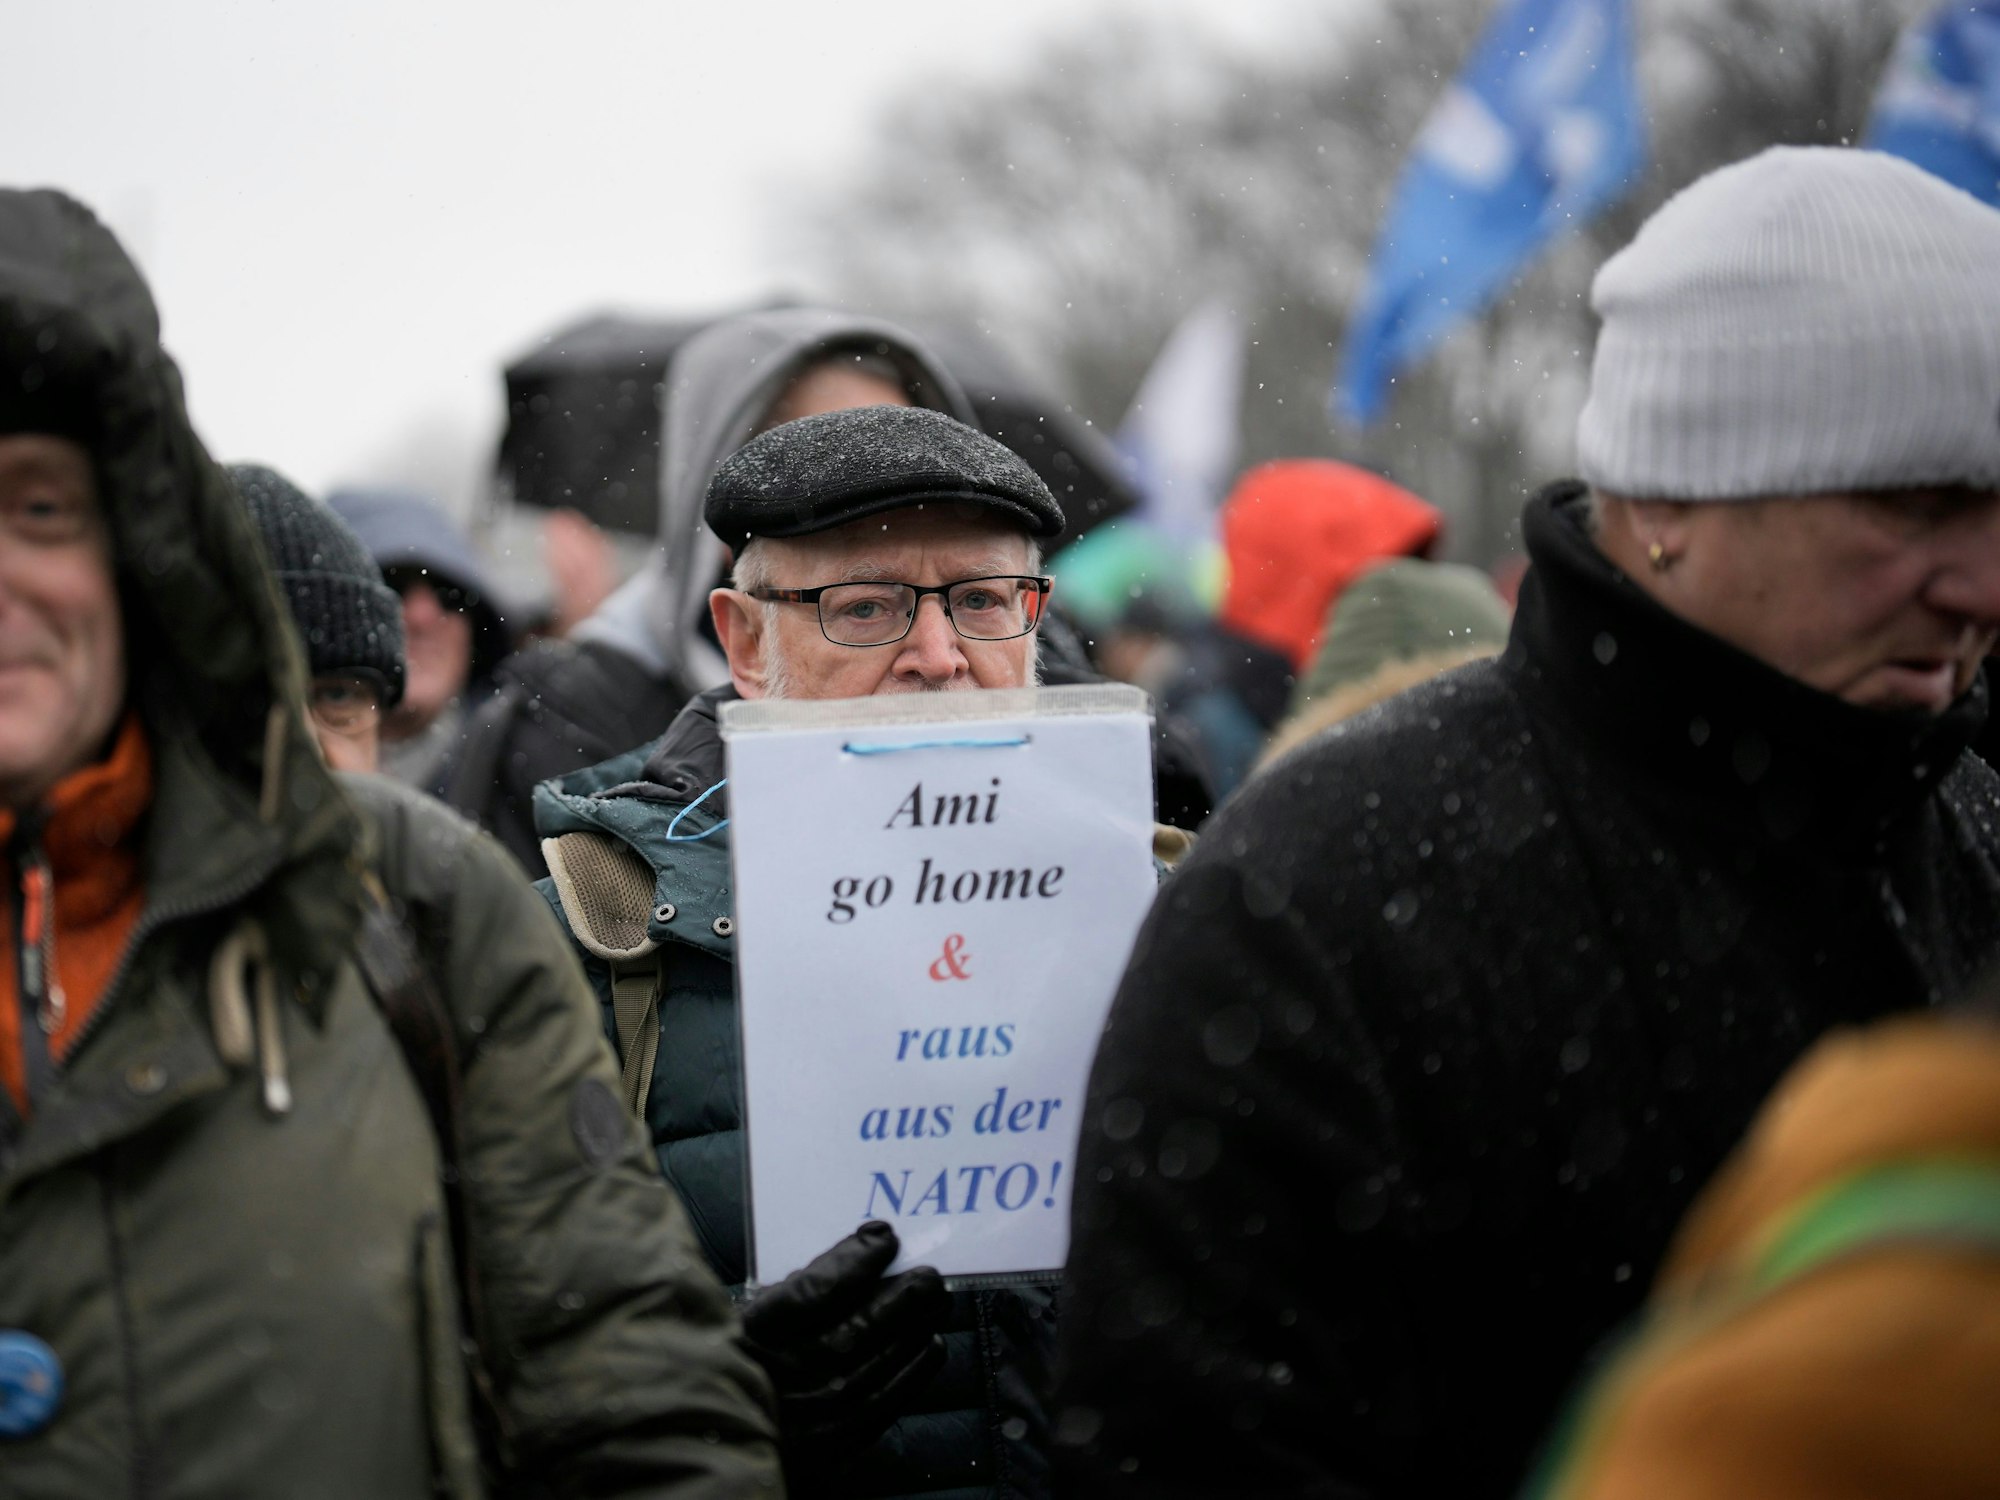 Ein Mann hat ein Schild mit der Aufschrift „Ami go home & raus aus der NATO"“ in der Hand.